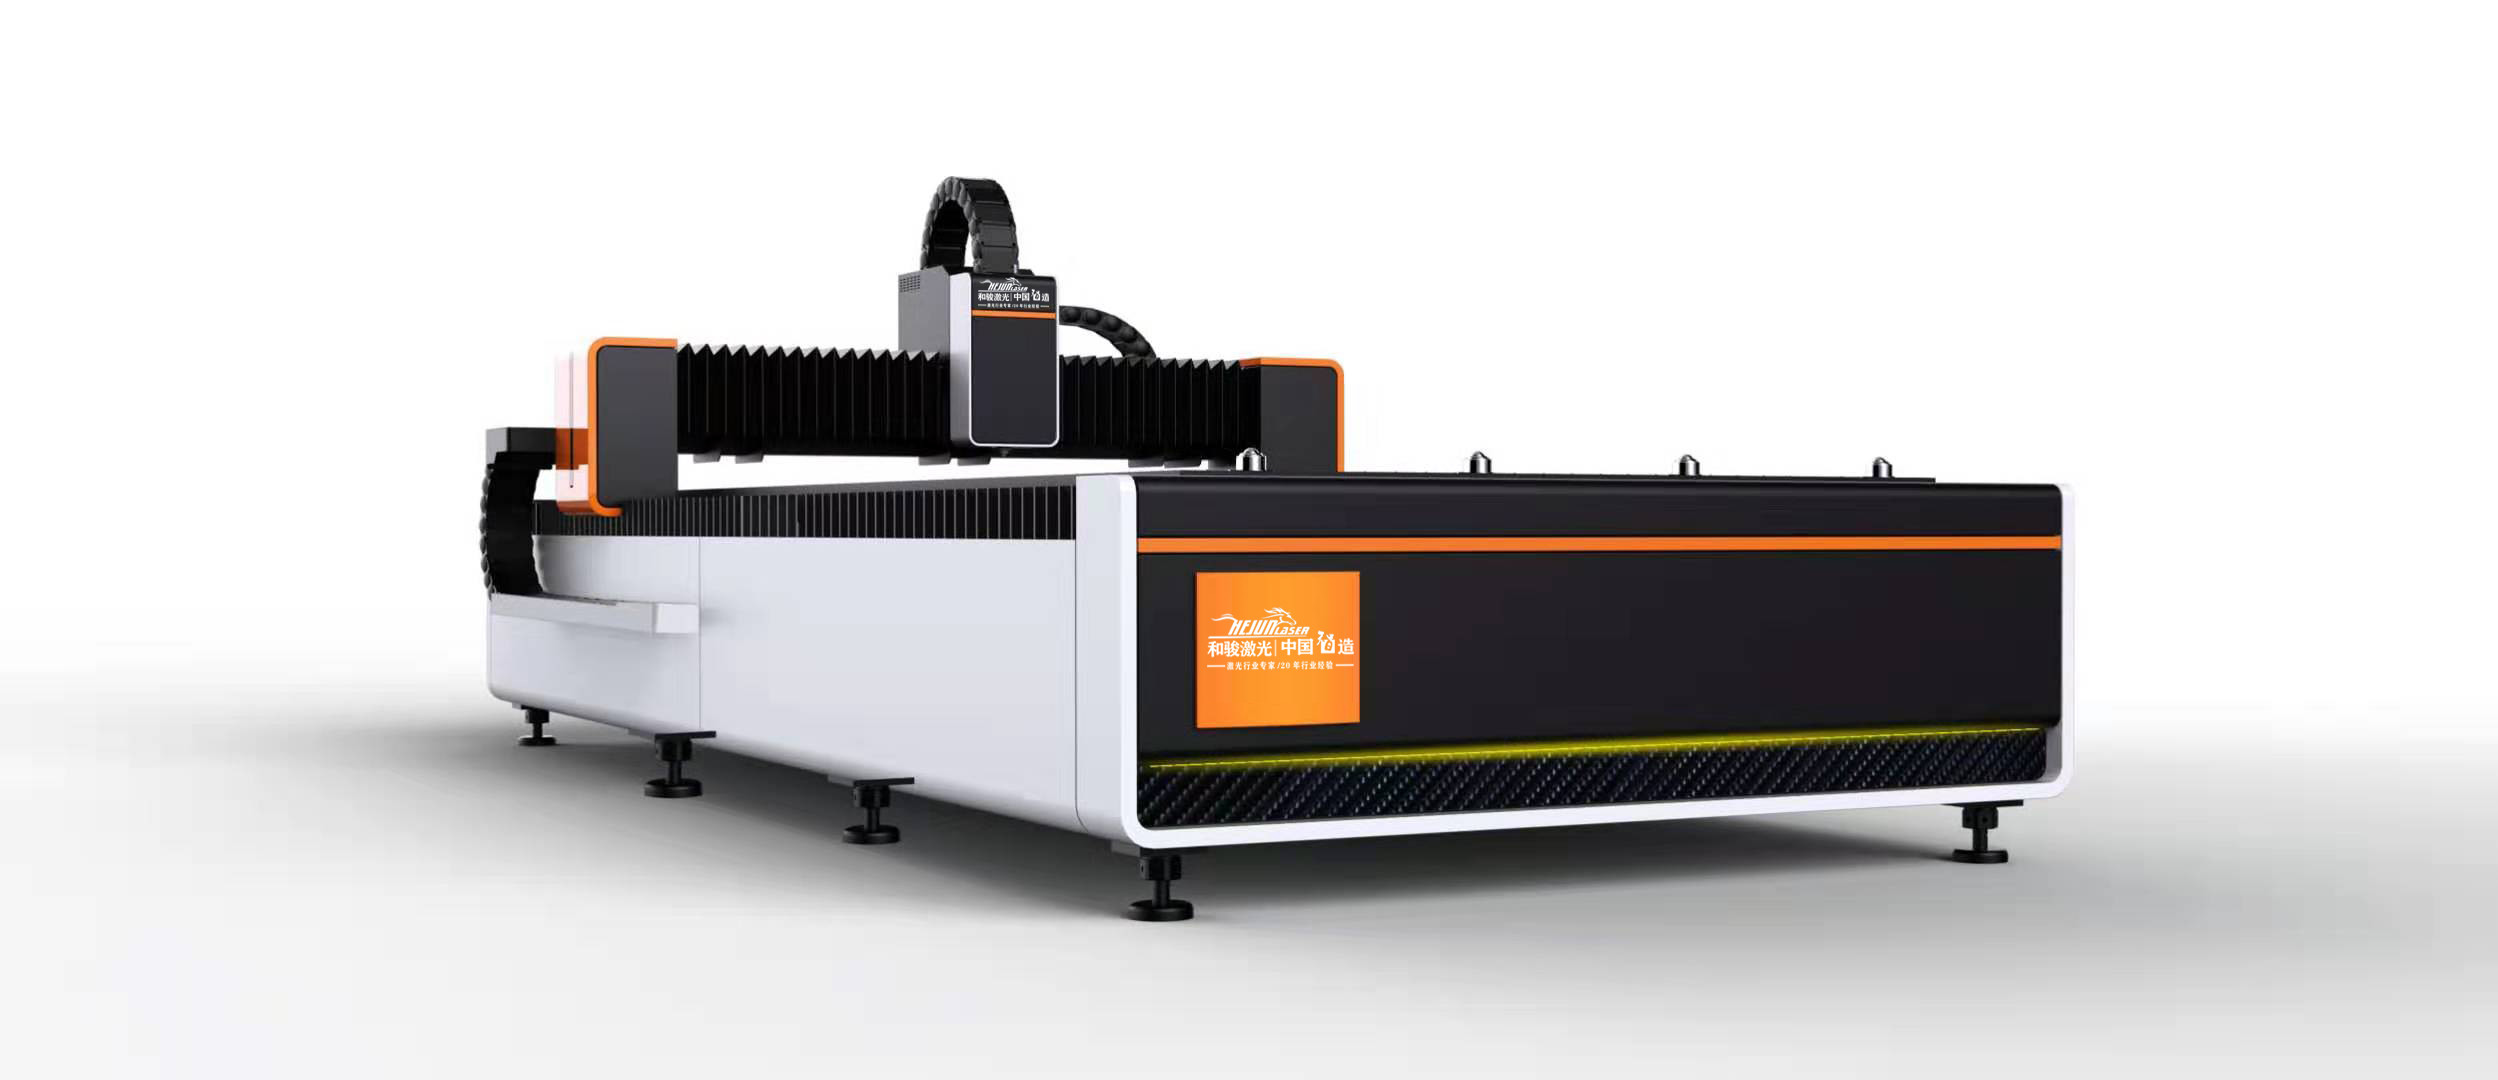 3000*1500mm 1000W raycus sheet metal laser cutting machine to cut 5mmSS ,10mmCS, 3mm Al